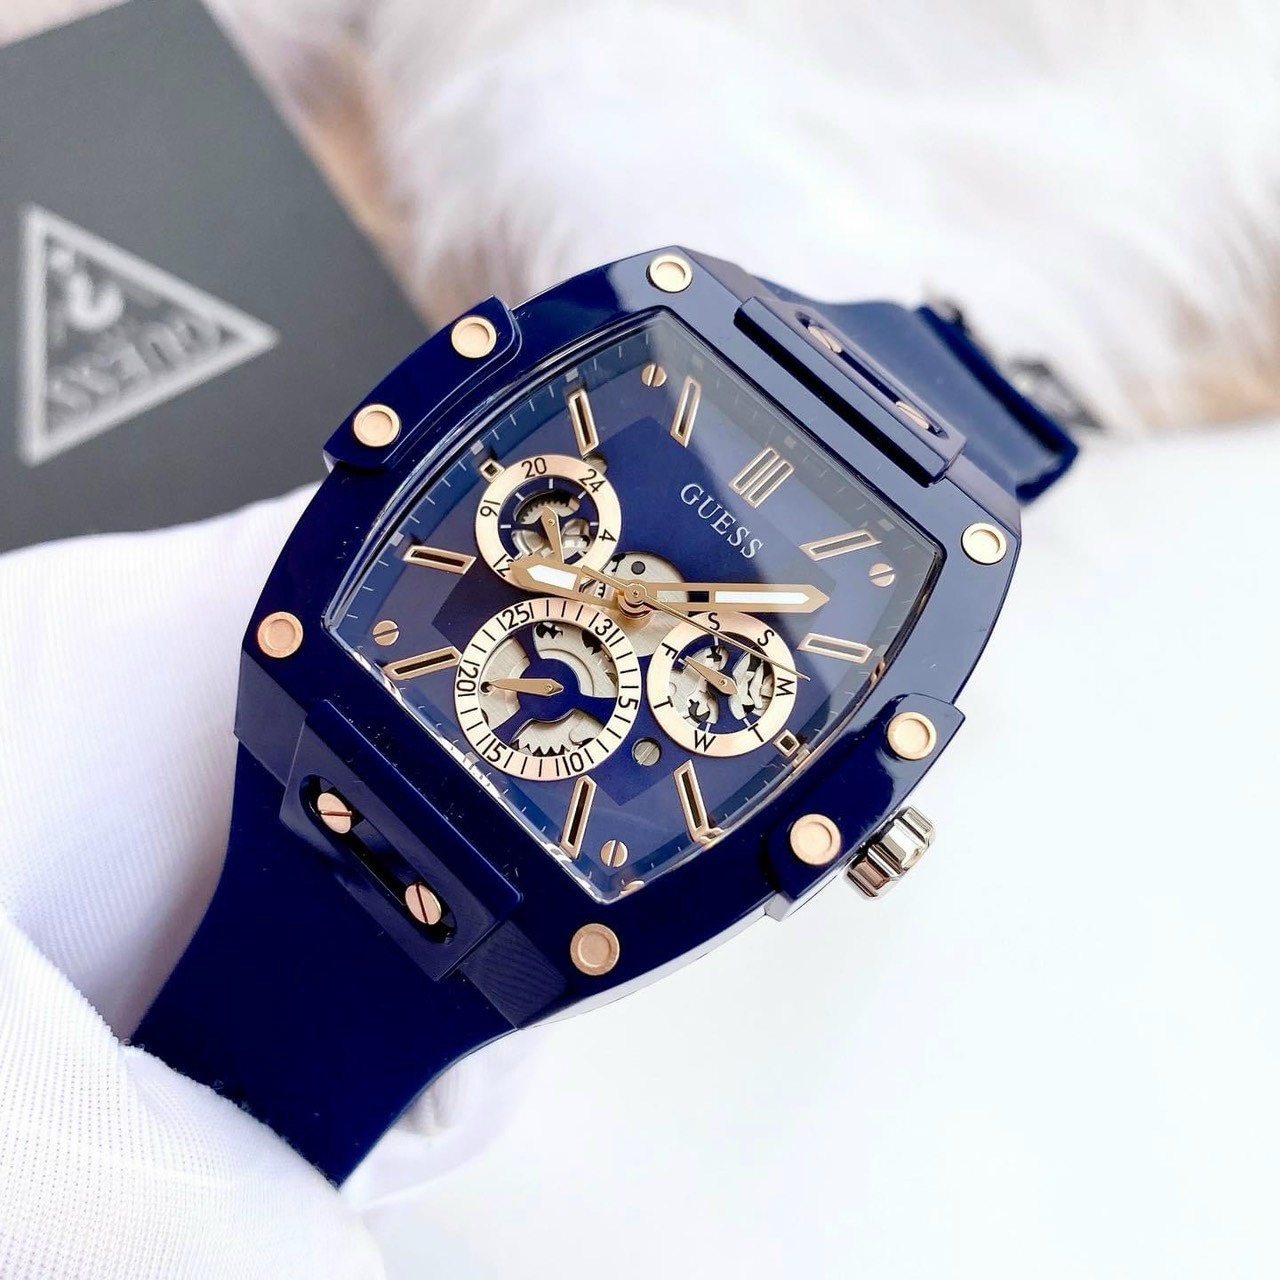 Đồng hồ đeo tay nam dây silicon cao cấp chống nước thể thao Guess size 43x51mm fullbox  shop kiwi